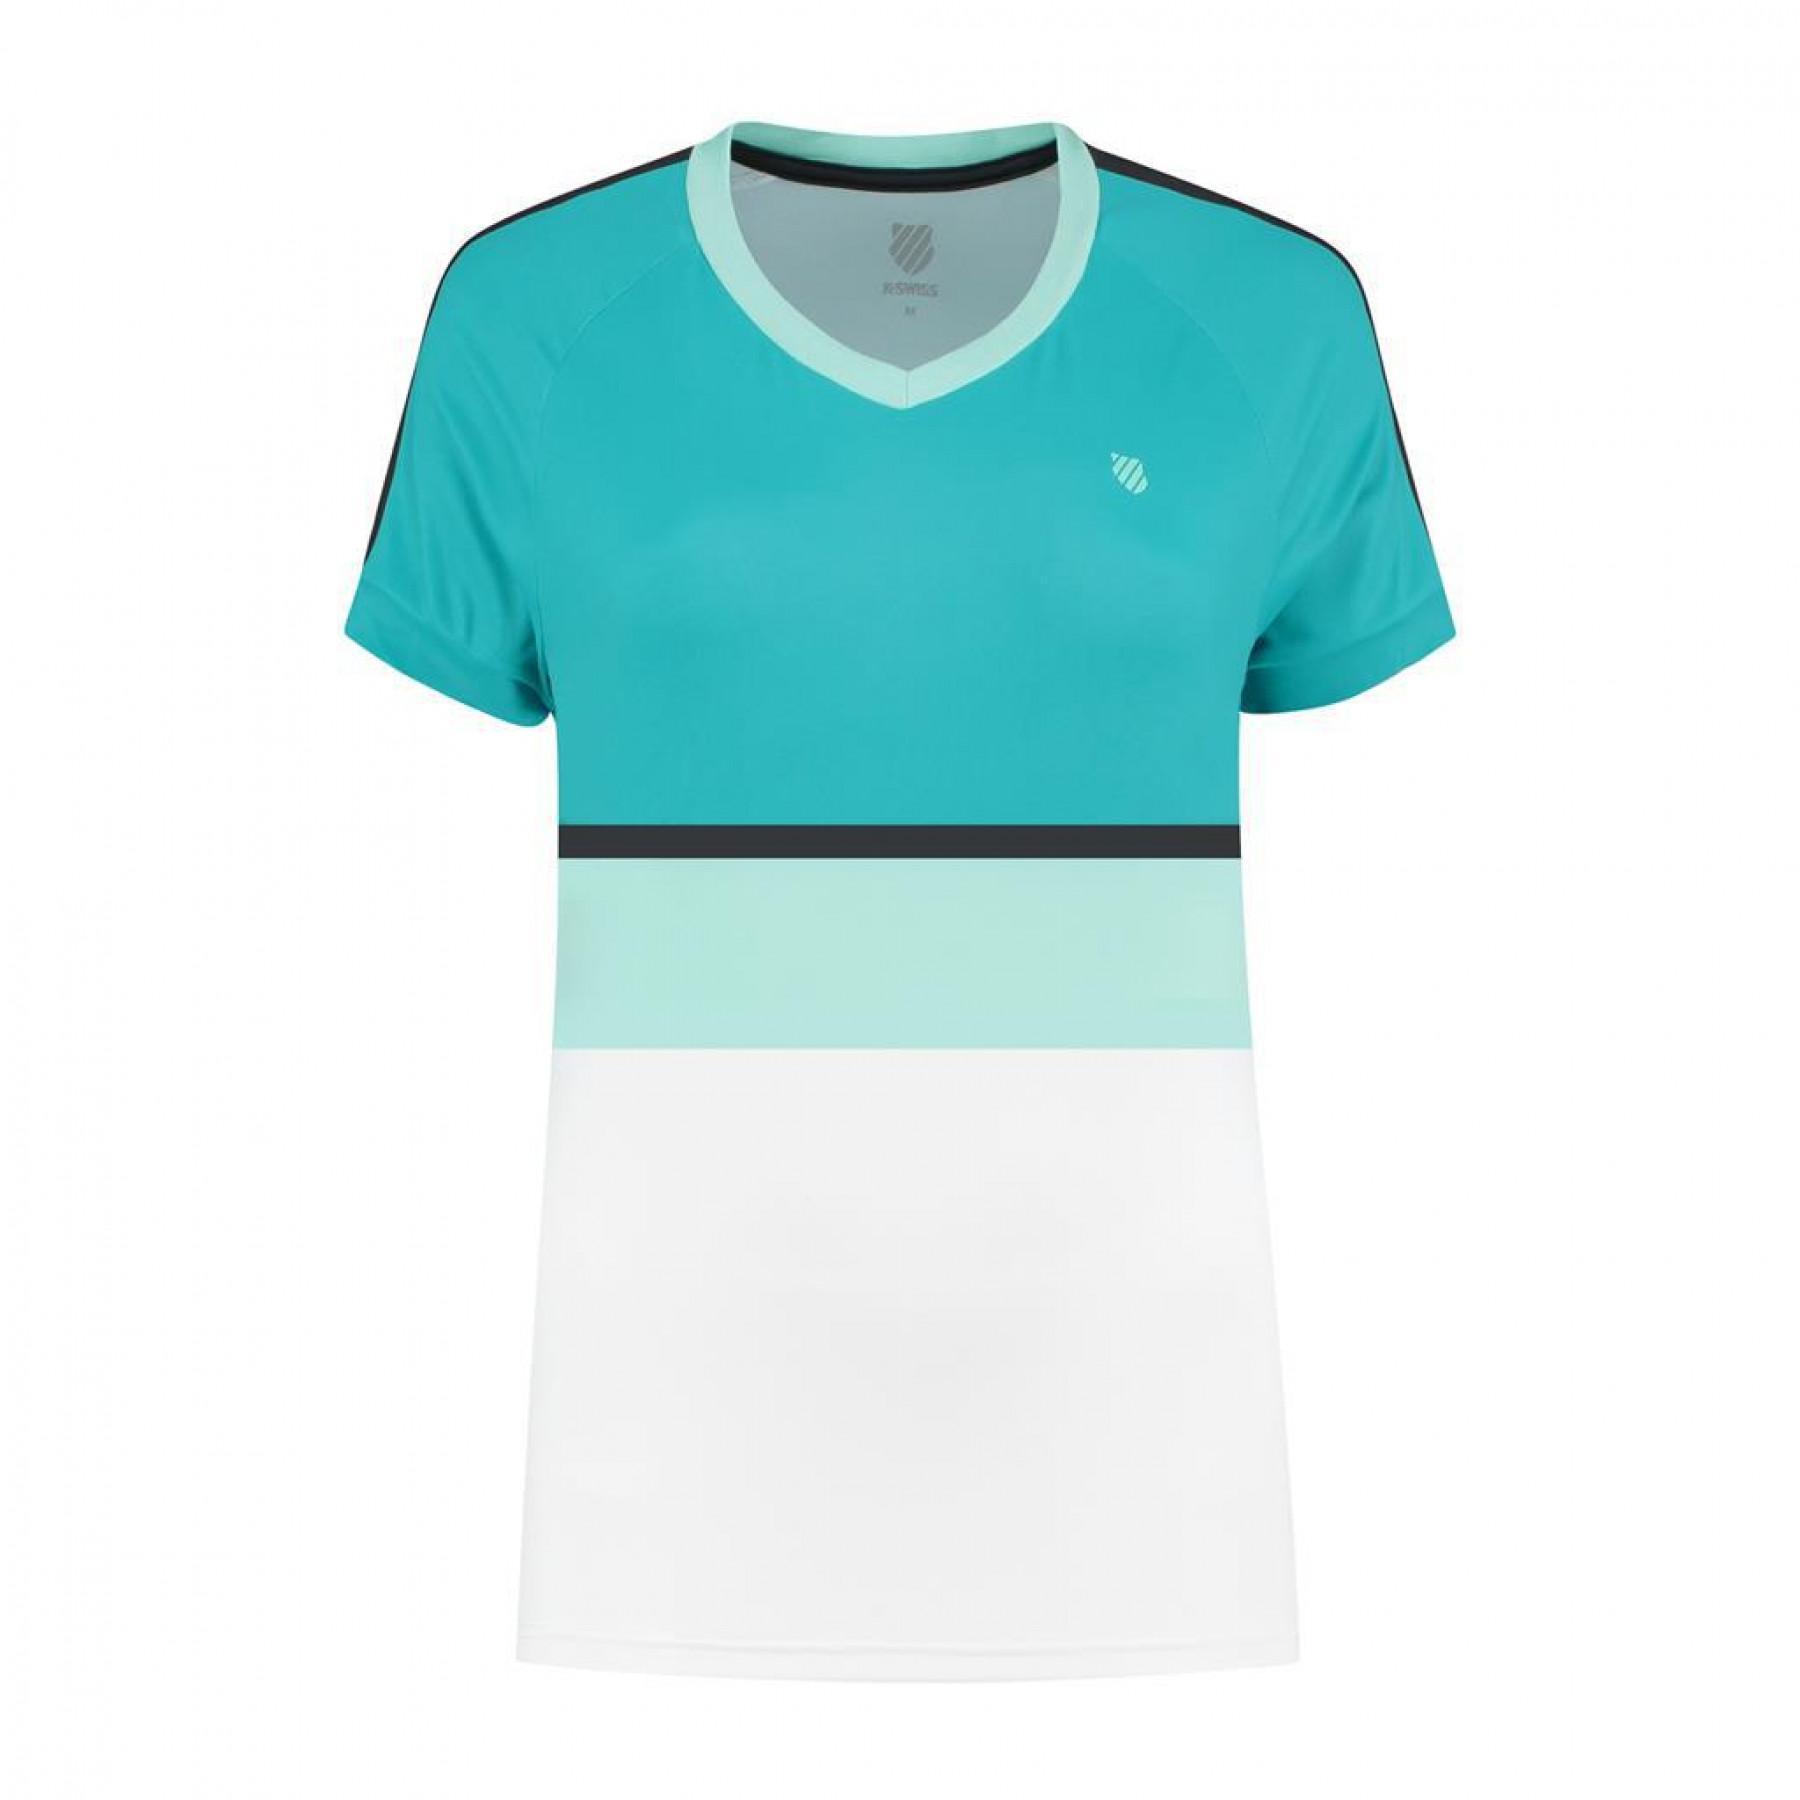 Damen-T-Shirt K-Swiss hypercourt